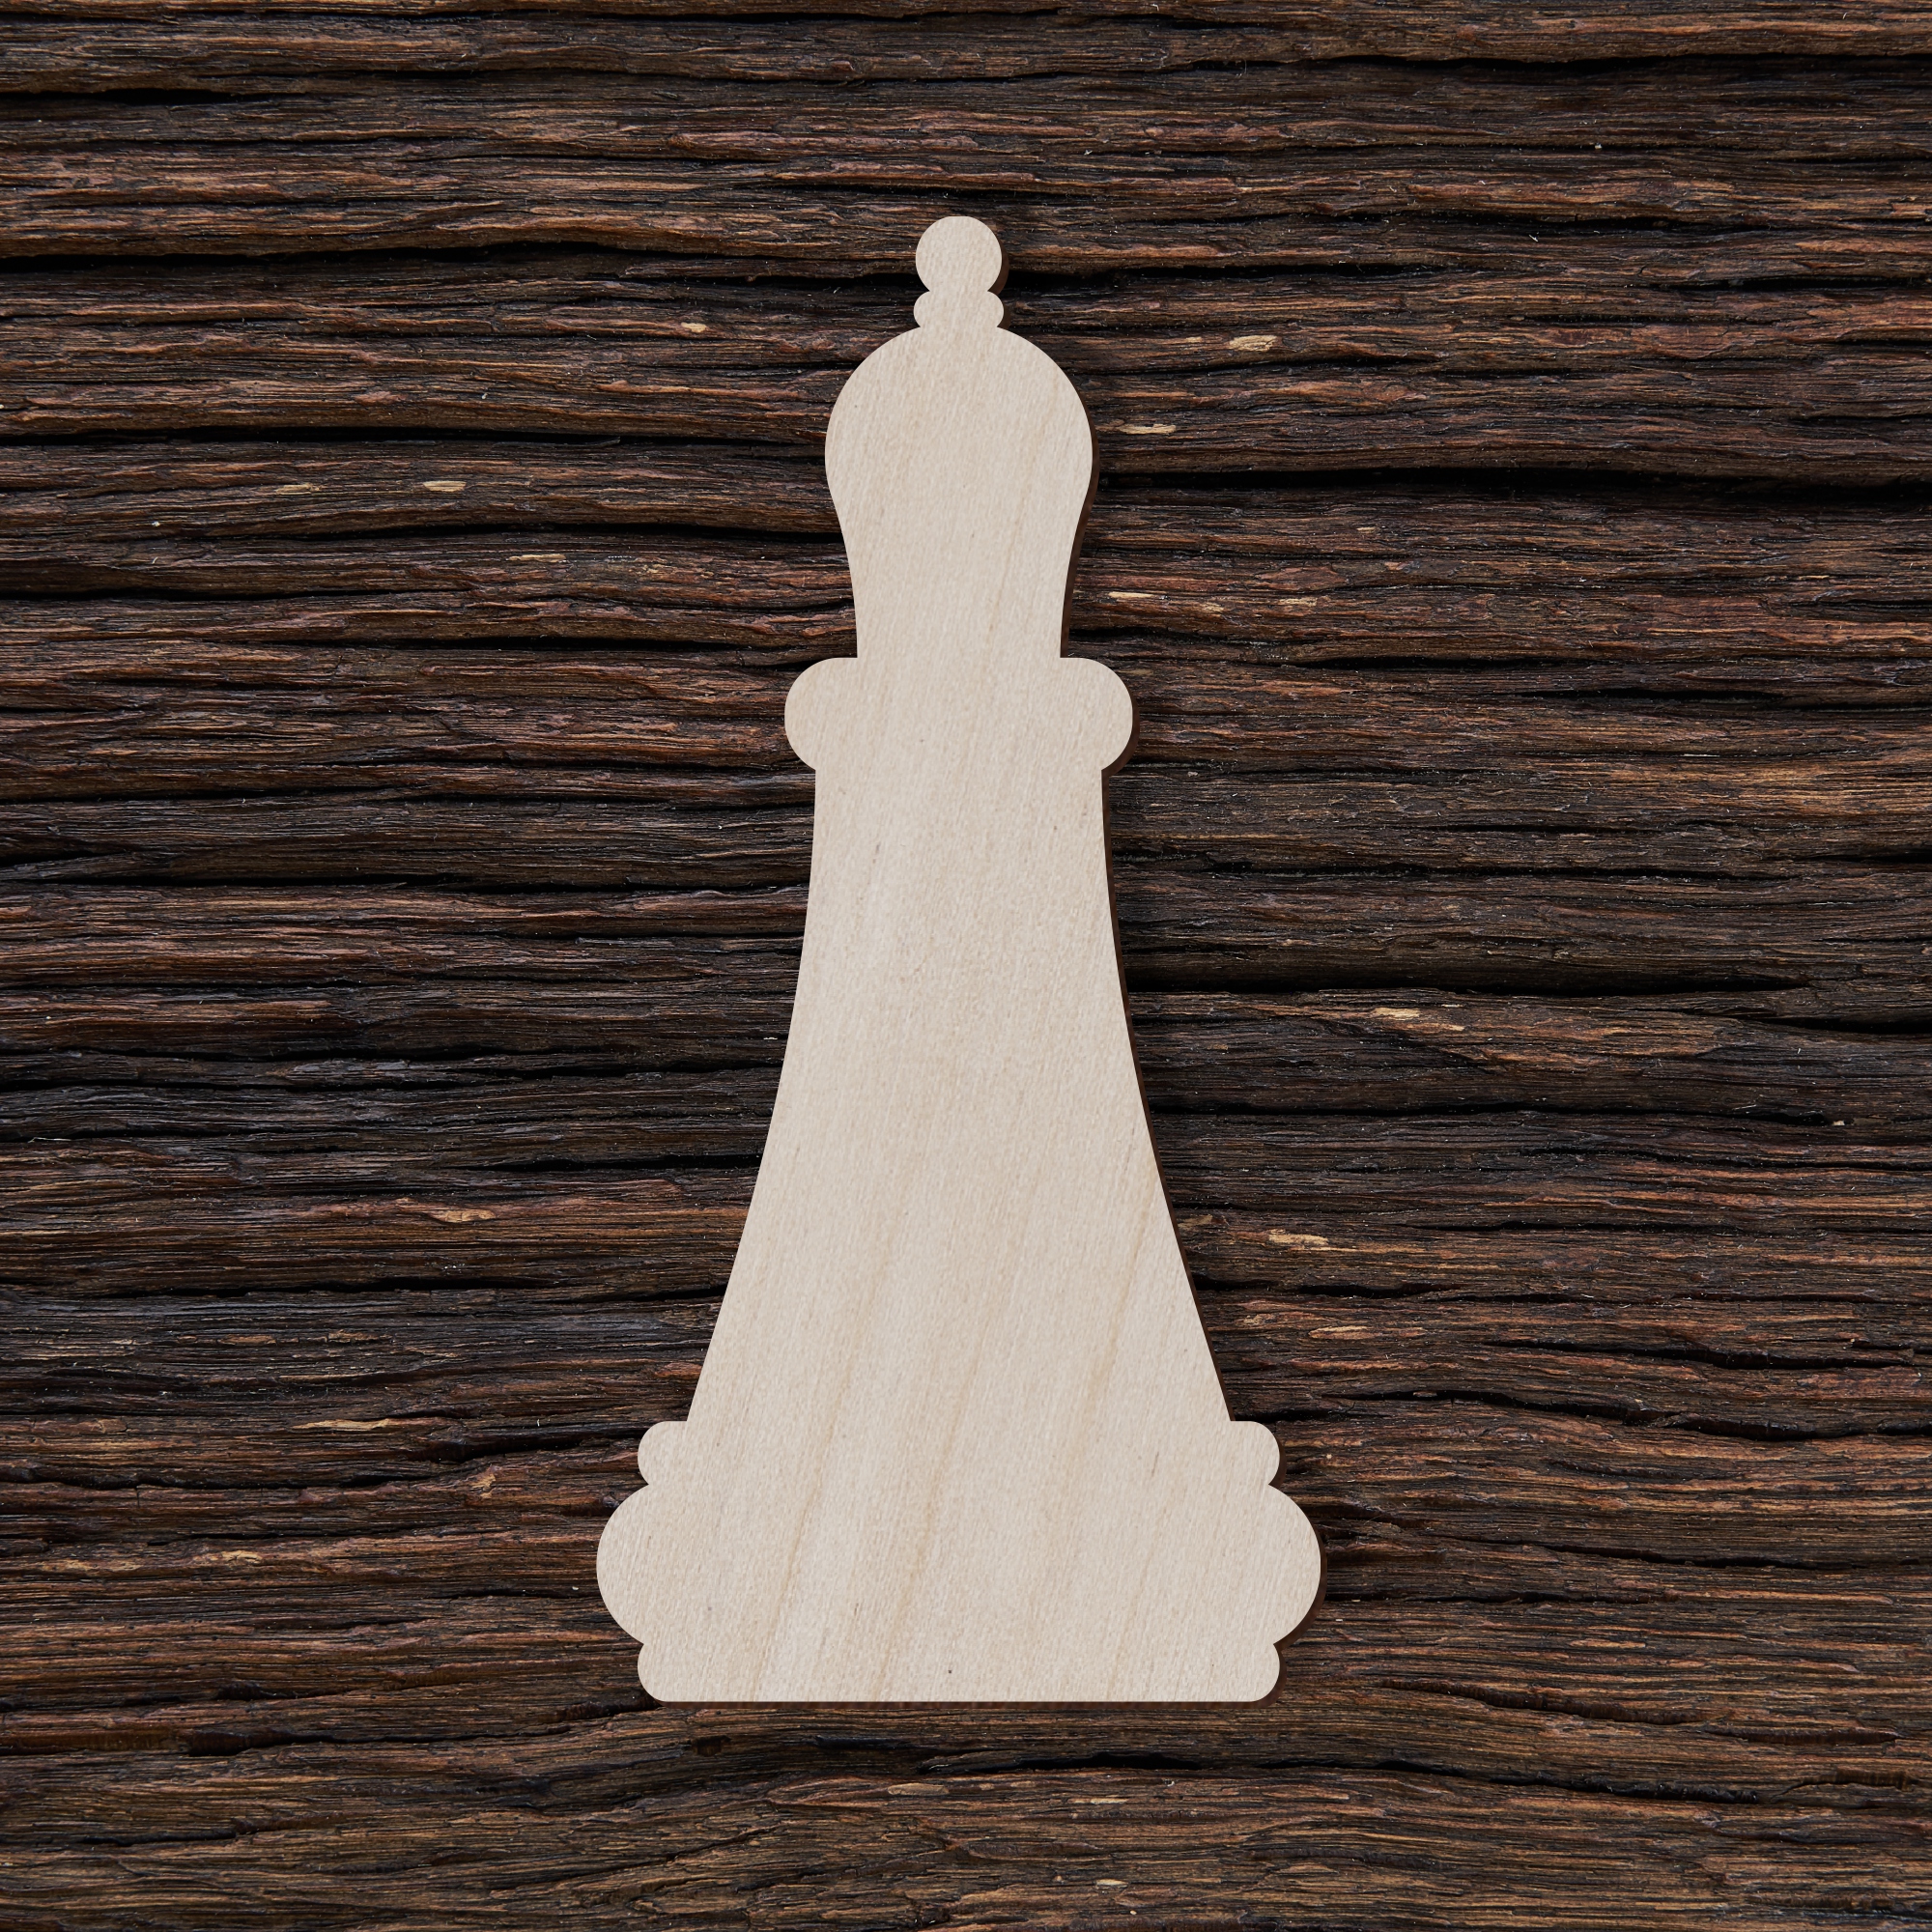 6šachmatų figūra rikis - medinis gaminys, pjautas lazeriu - dekoravimui ir dažymui